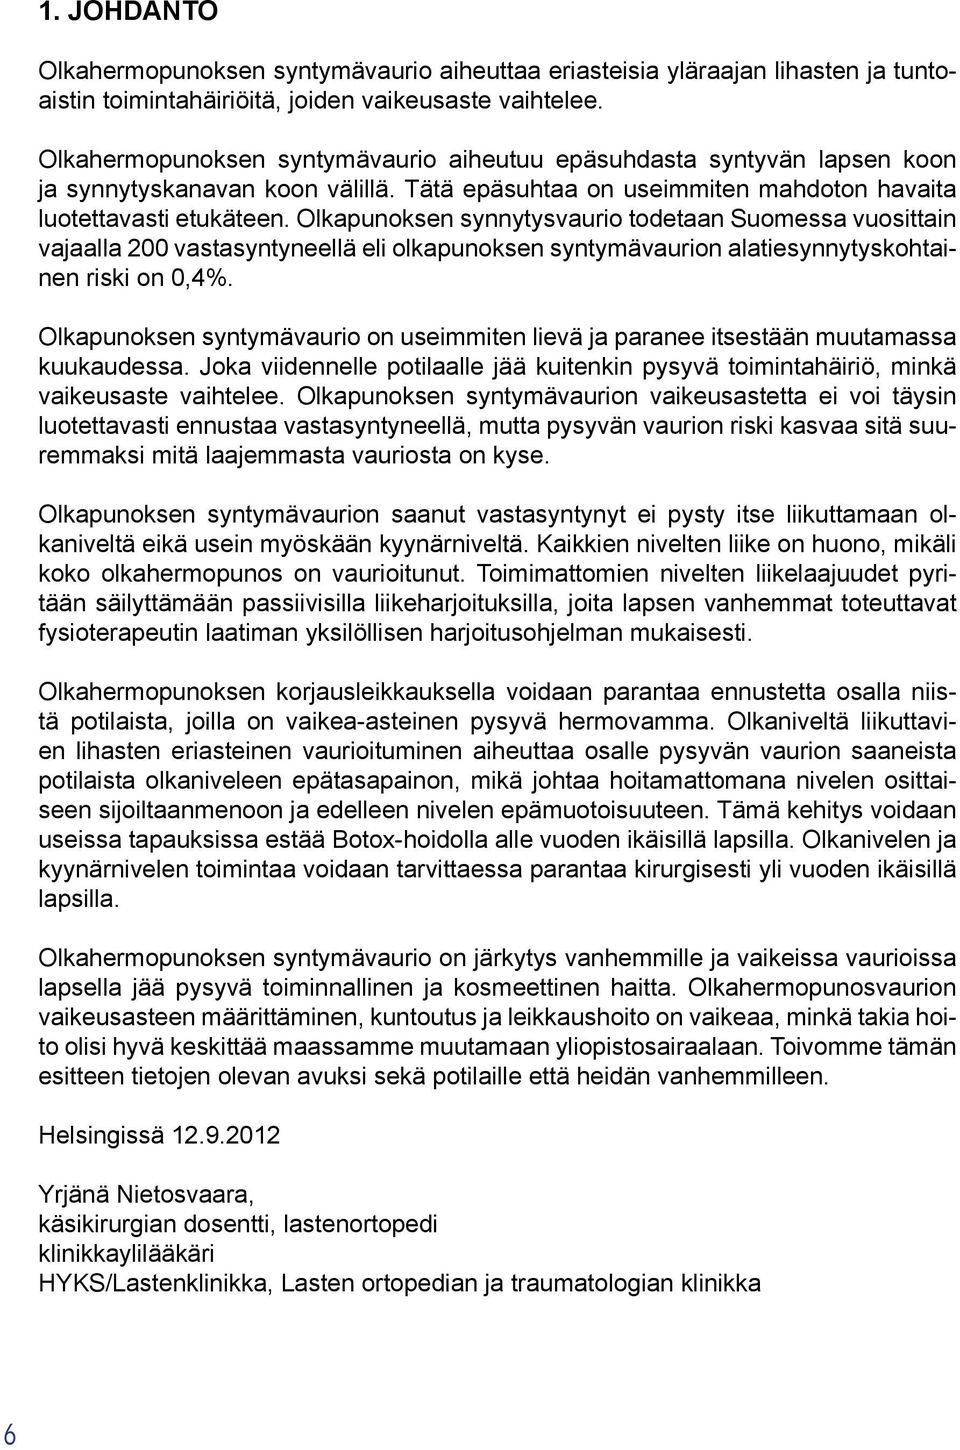 Olkapunoksen synnytysvaurio todetaan Suomessa vuosittain vajaalla 200 vastasyntyneellä eli olkapunoksen syntymävaurion alatiesynnytyskohtainen riski on 0,4%.